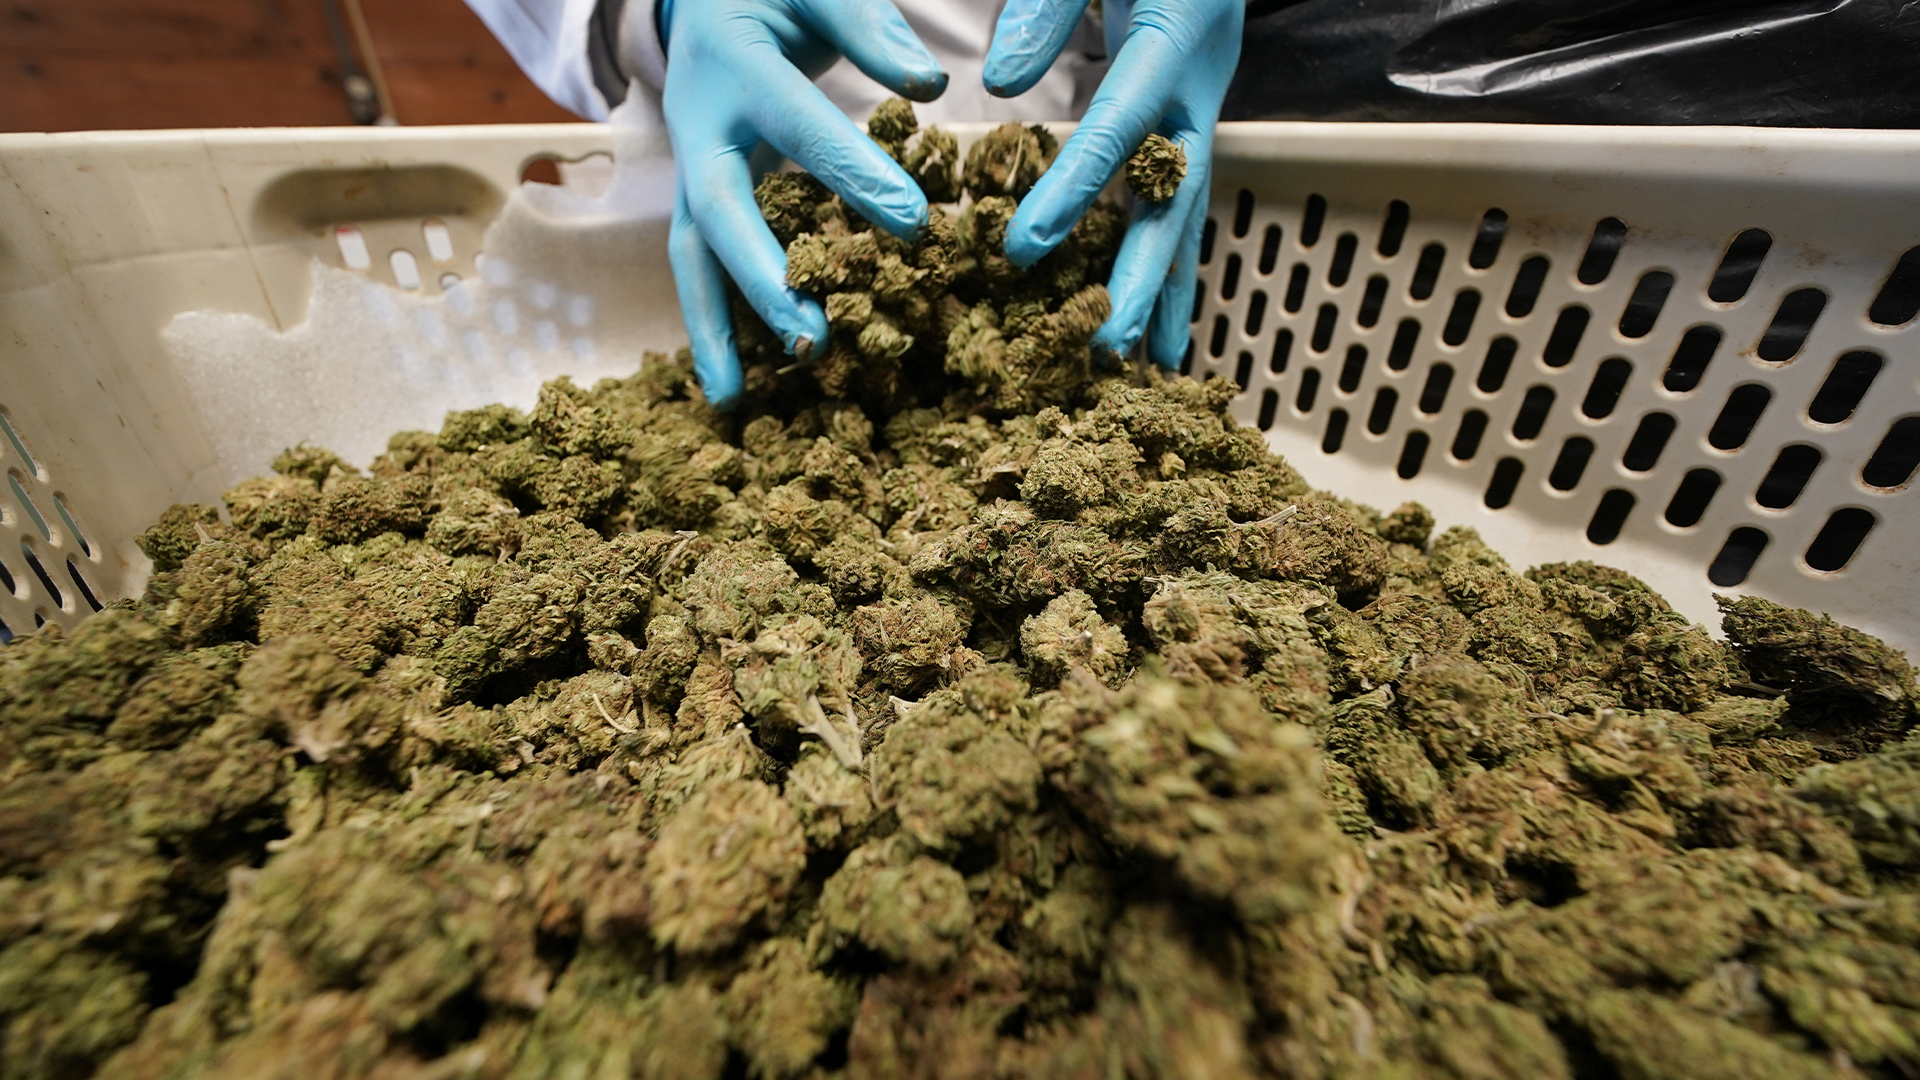 Une personne a été hospitalisée en raison d’une surdose d’opioïde, jeudi, après avoir consommé une forme de cannabis achetée dans les rues de Montréal.